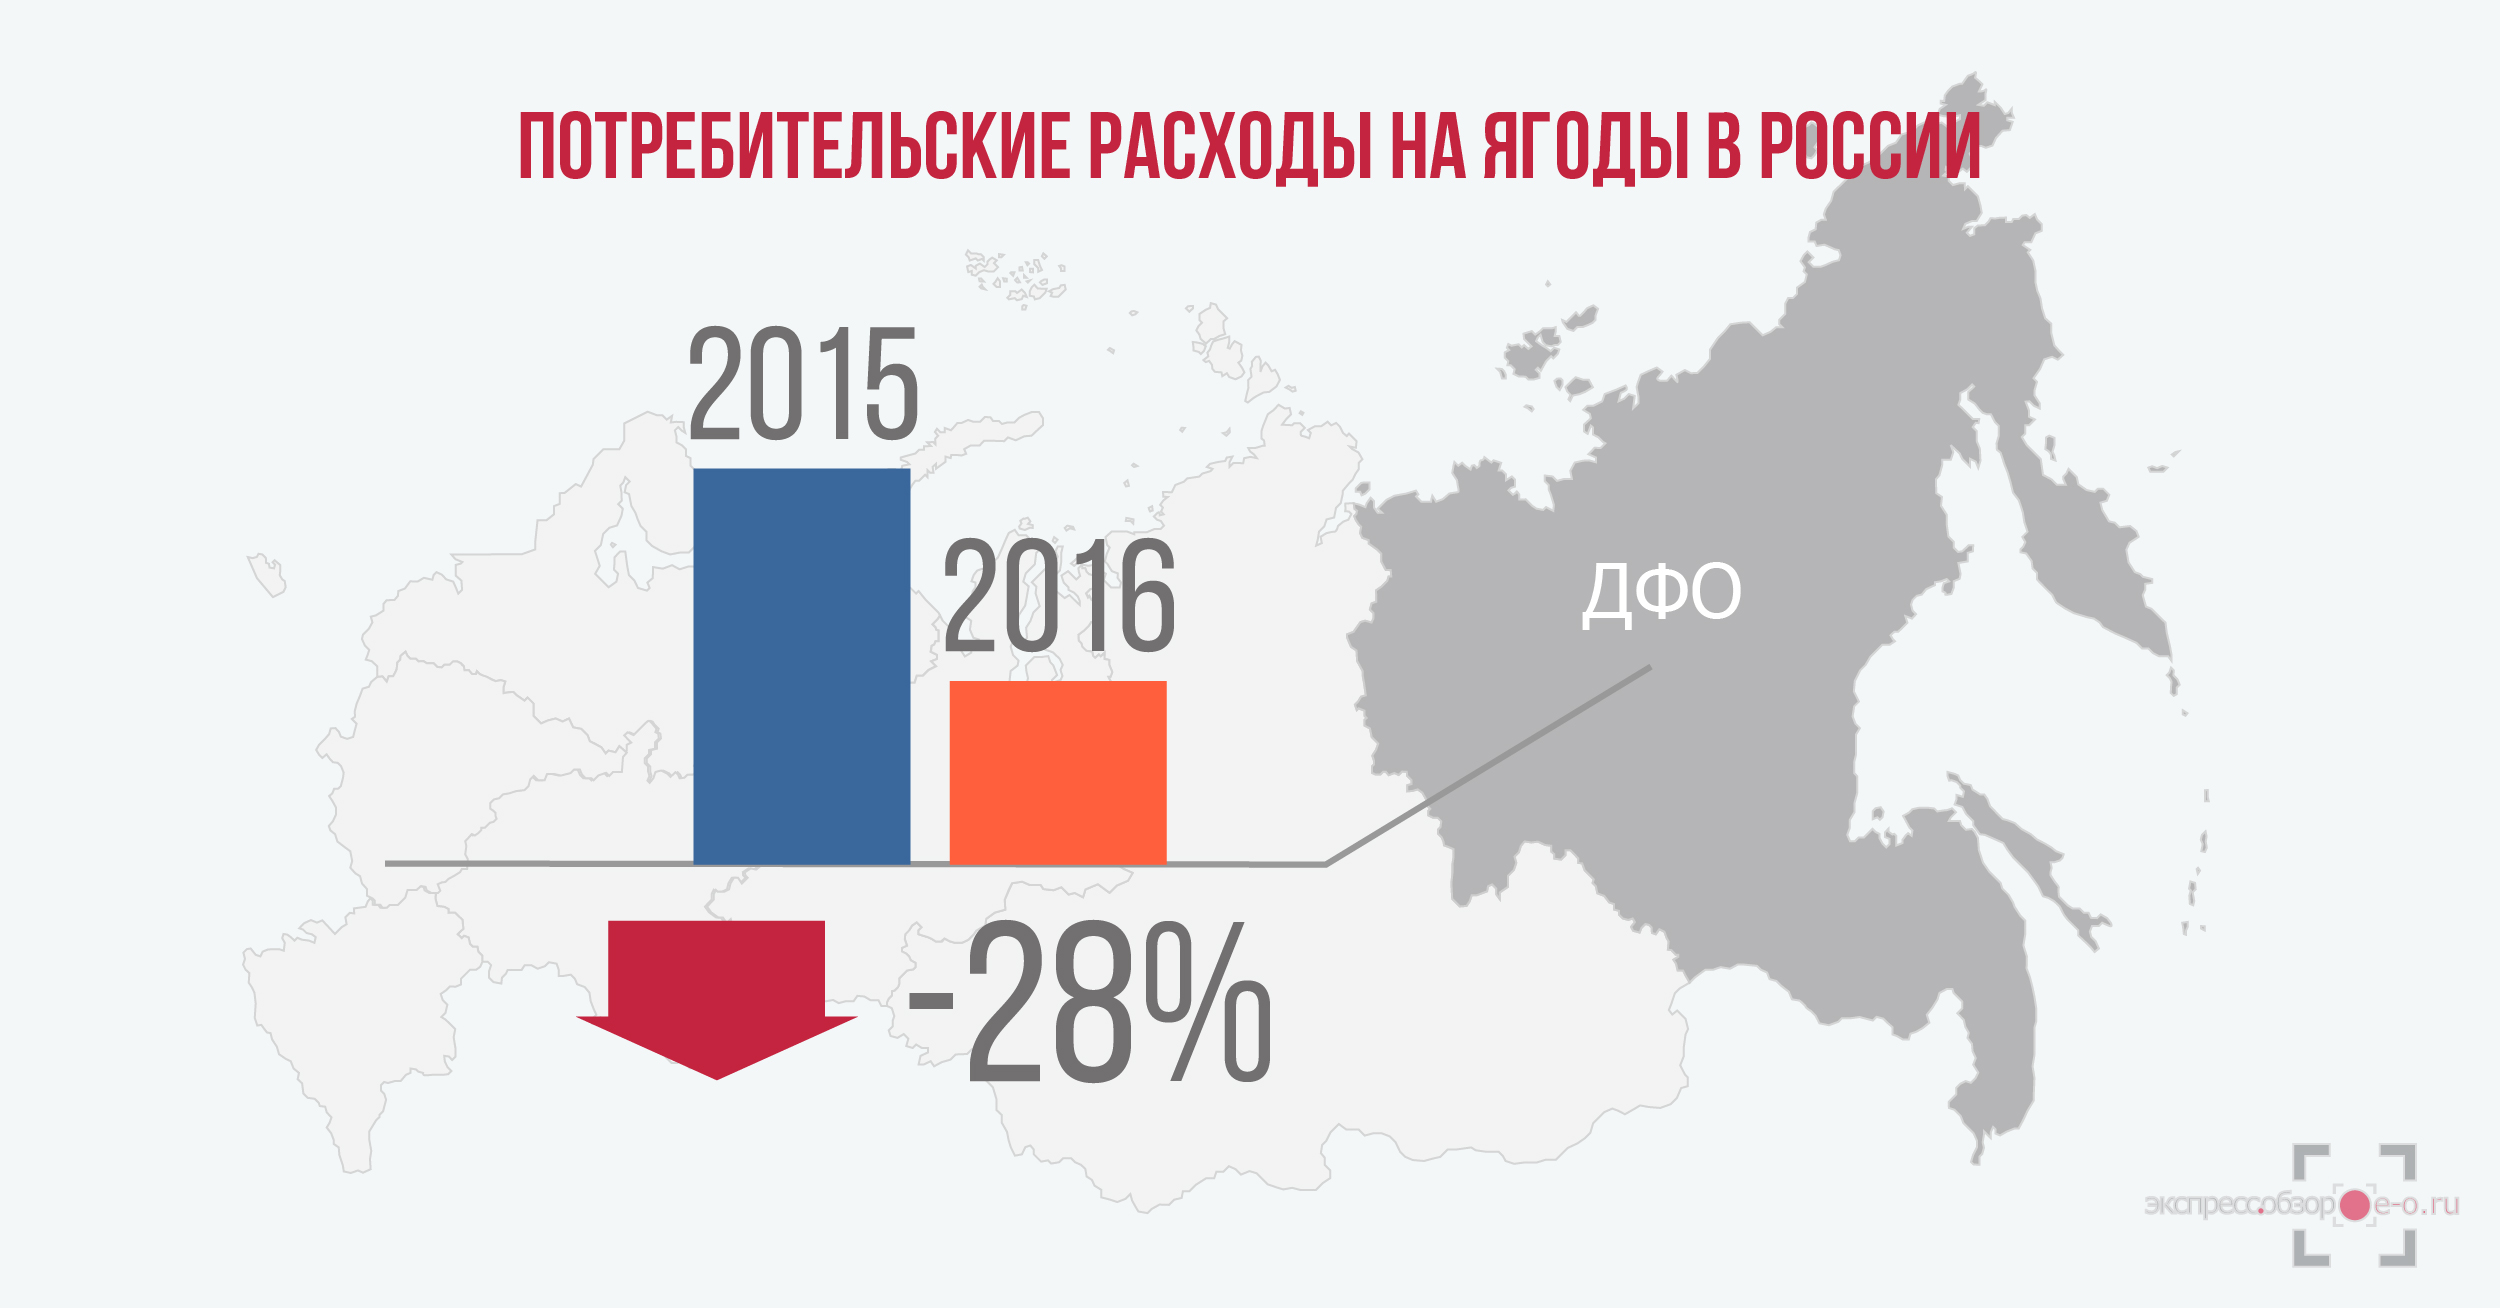 Потребительские расходы на ягоды в России